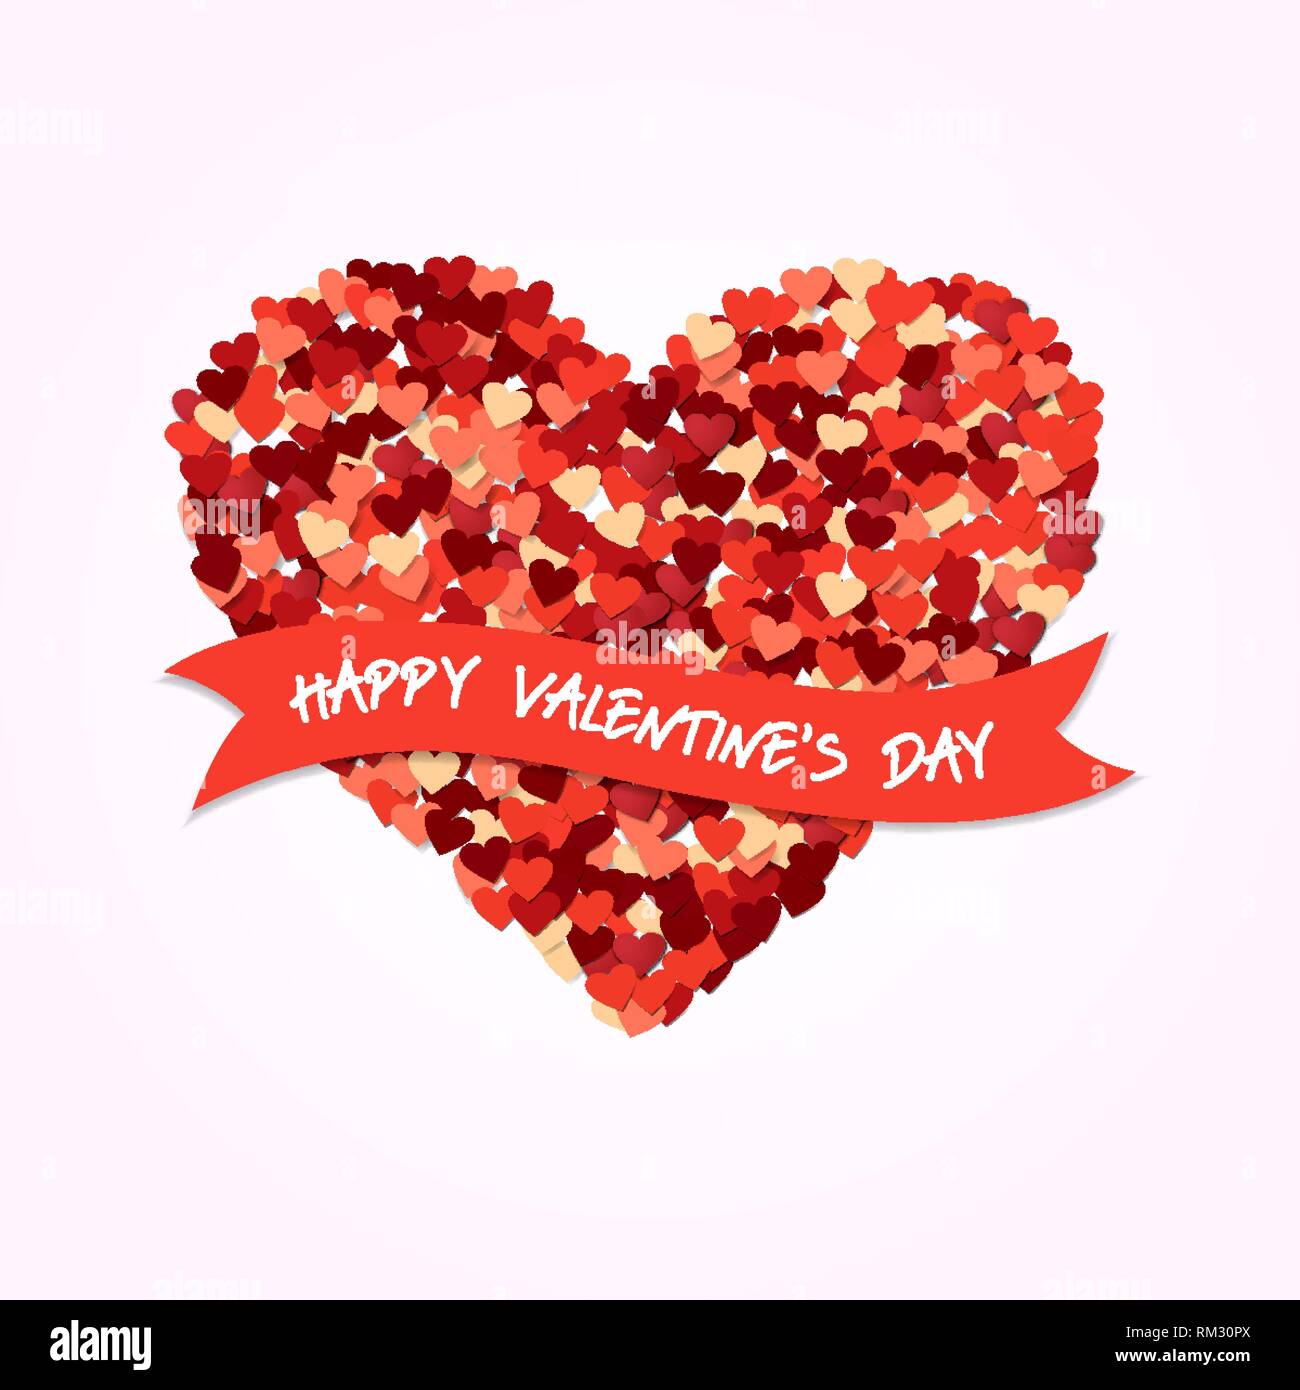 Felice il giorno di San Valentino amore concetto illustrazione. Cuore rosso forma composizione di design con la tipografia vacanze preventivo. Illustrazione Vettoriale